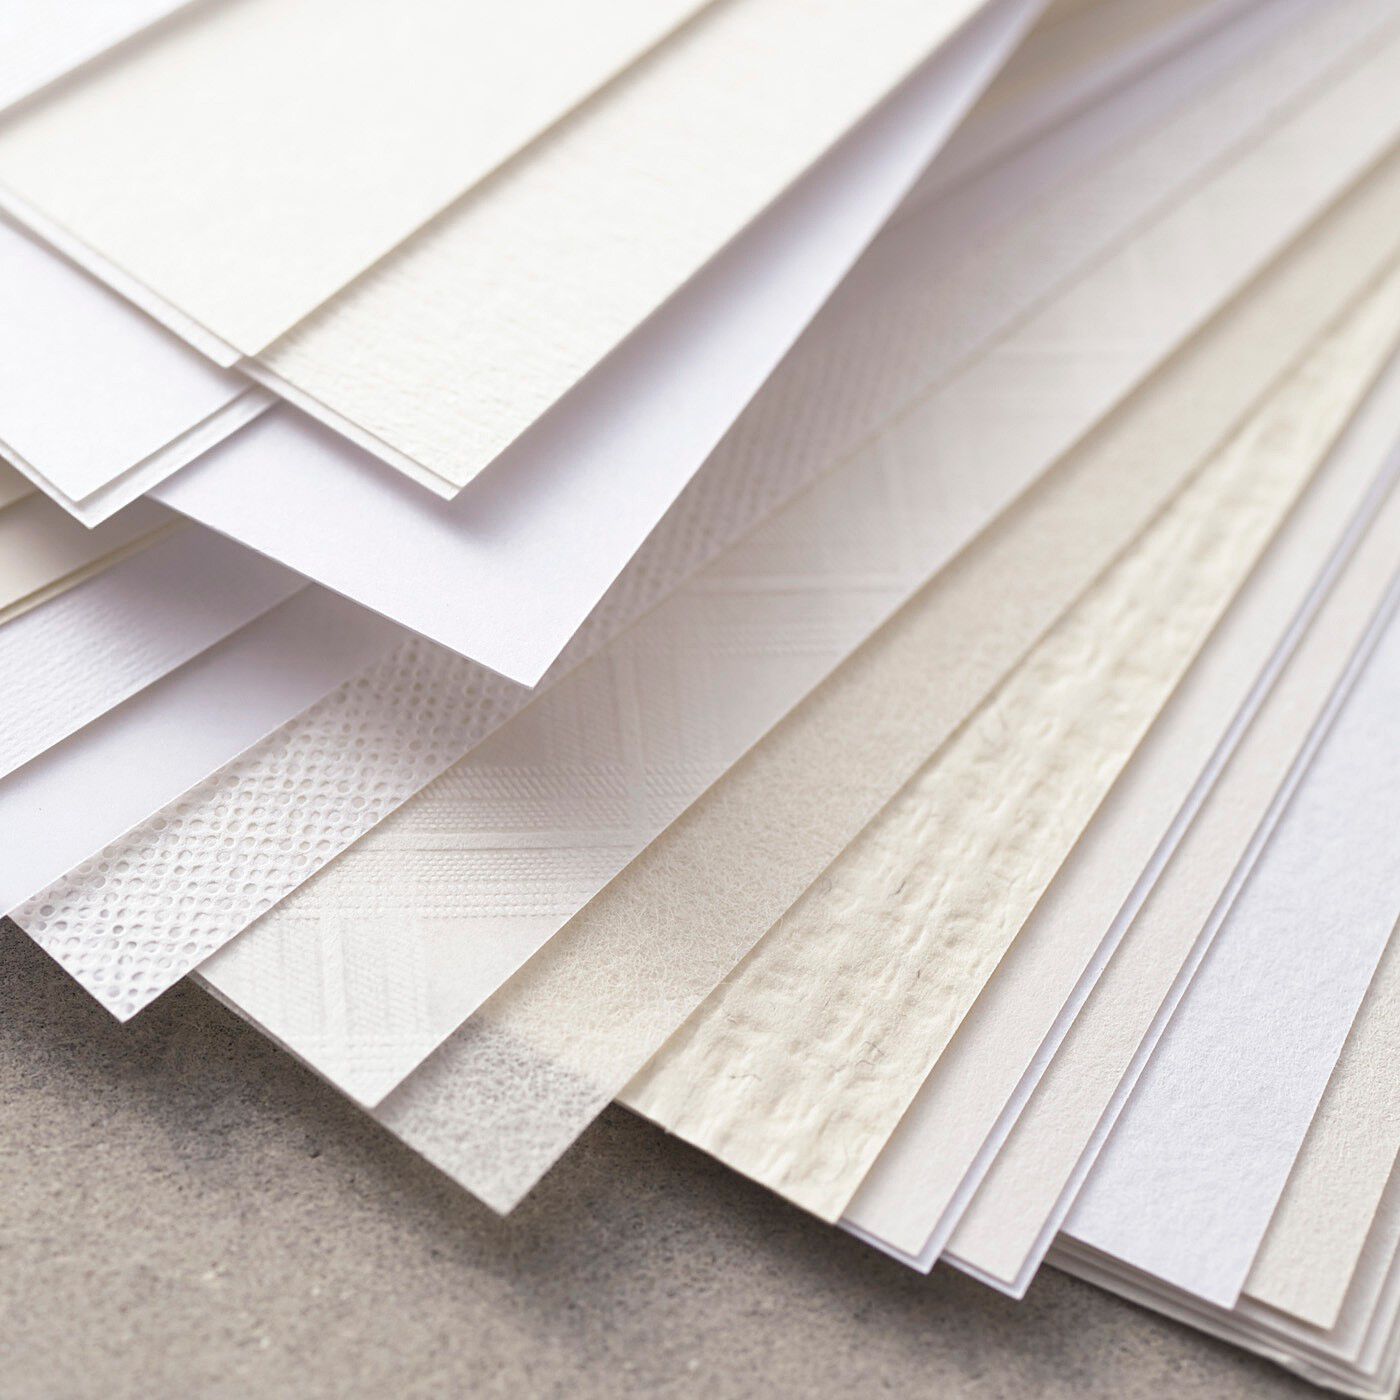 500色の色えんぴつ TOKYO SEEDS 紙の専門商社 竹尾が選ぶ 500種類の紙